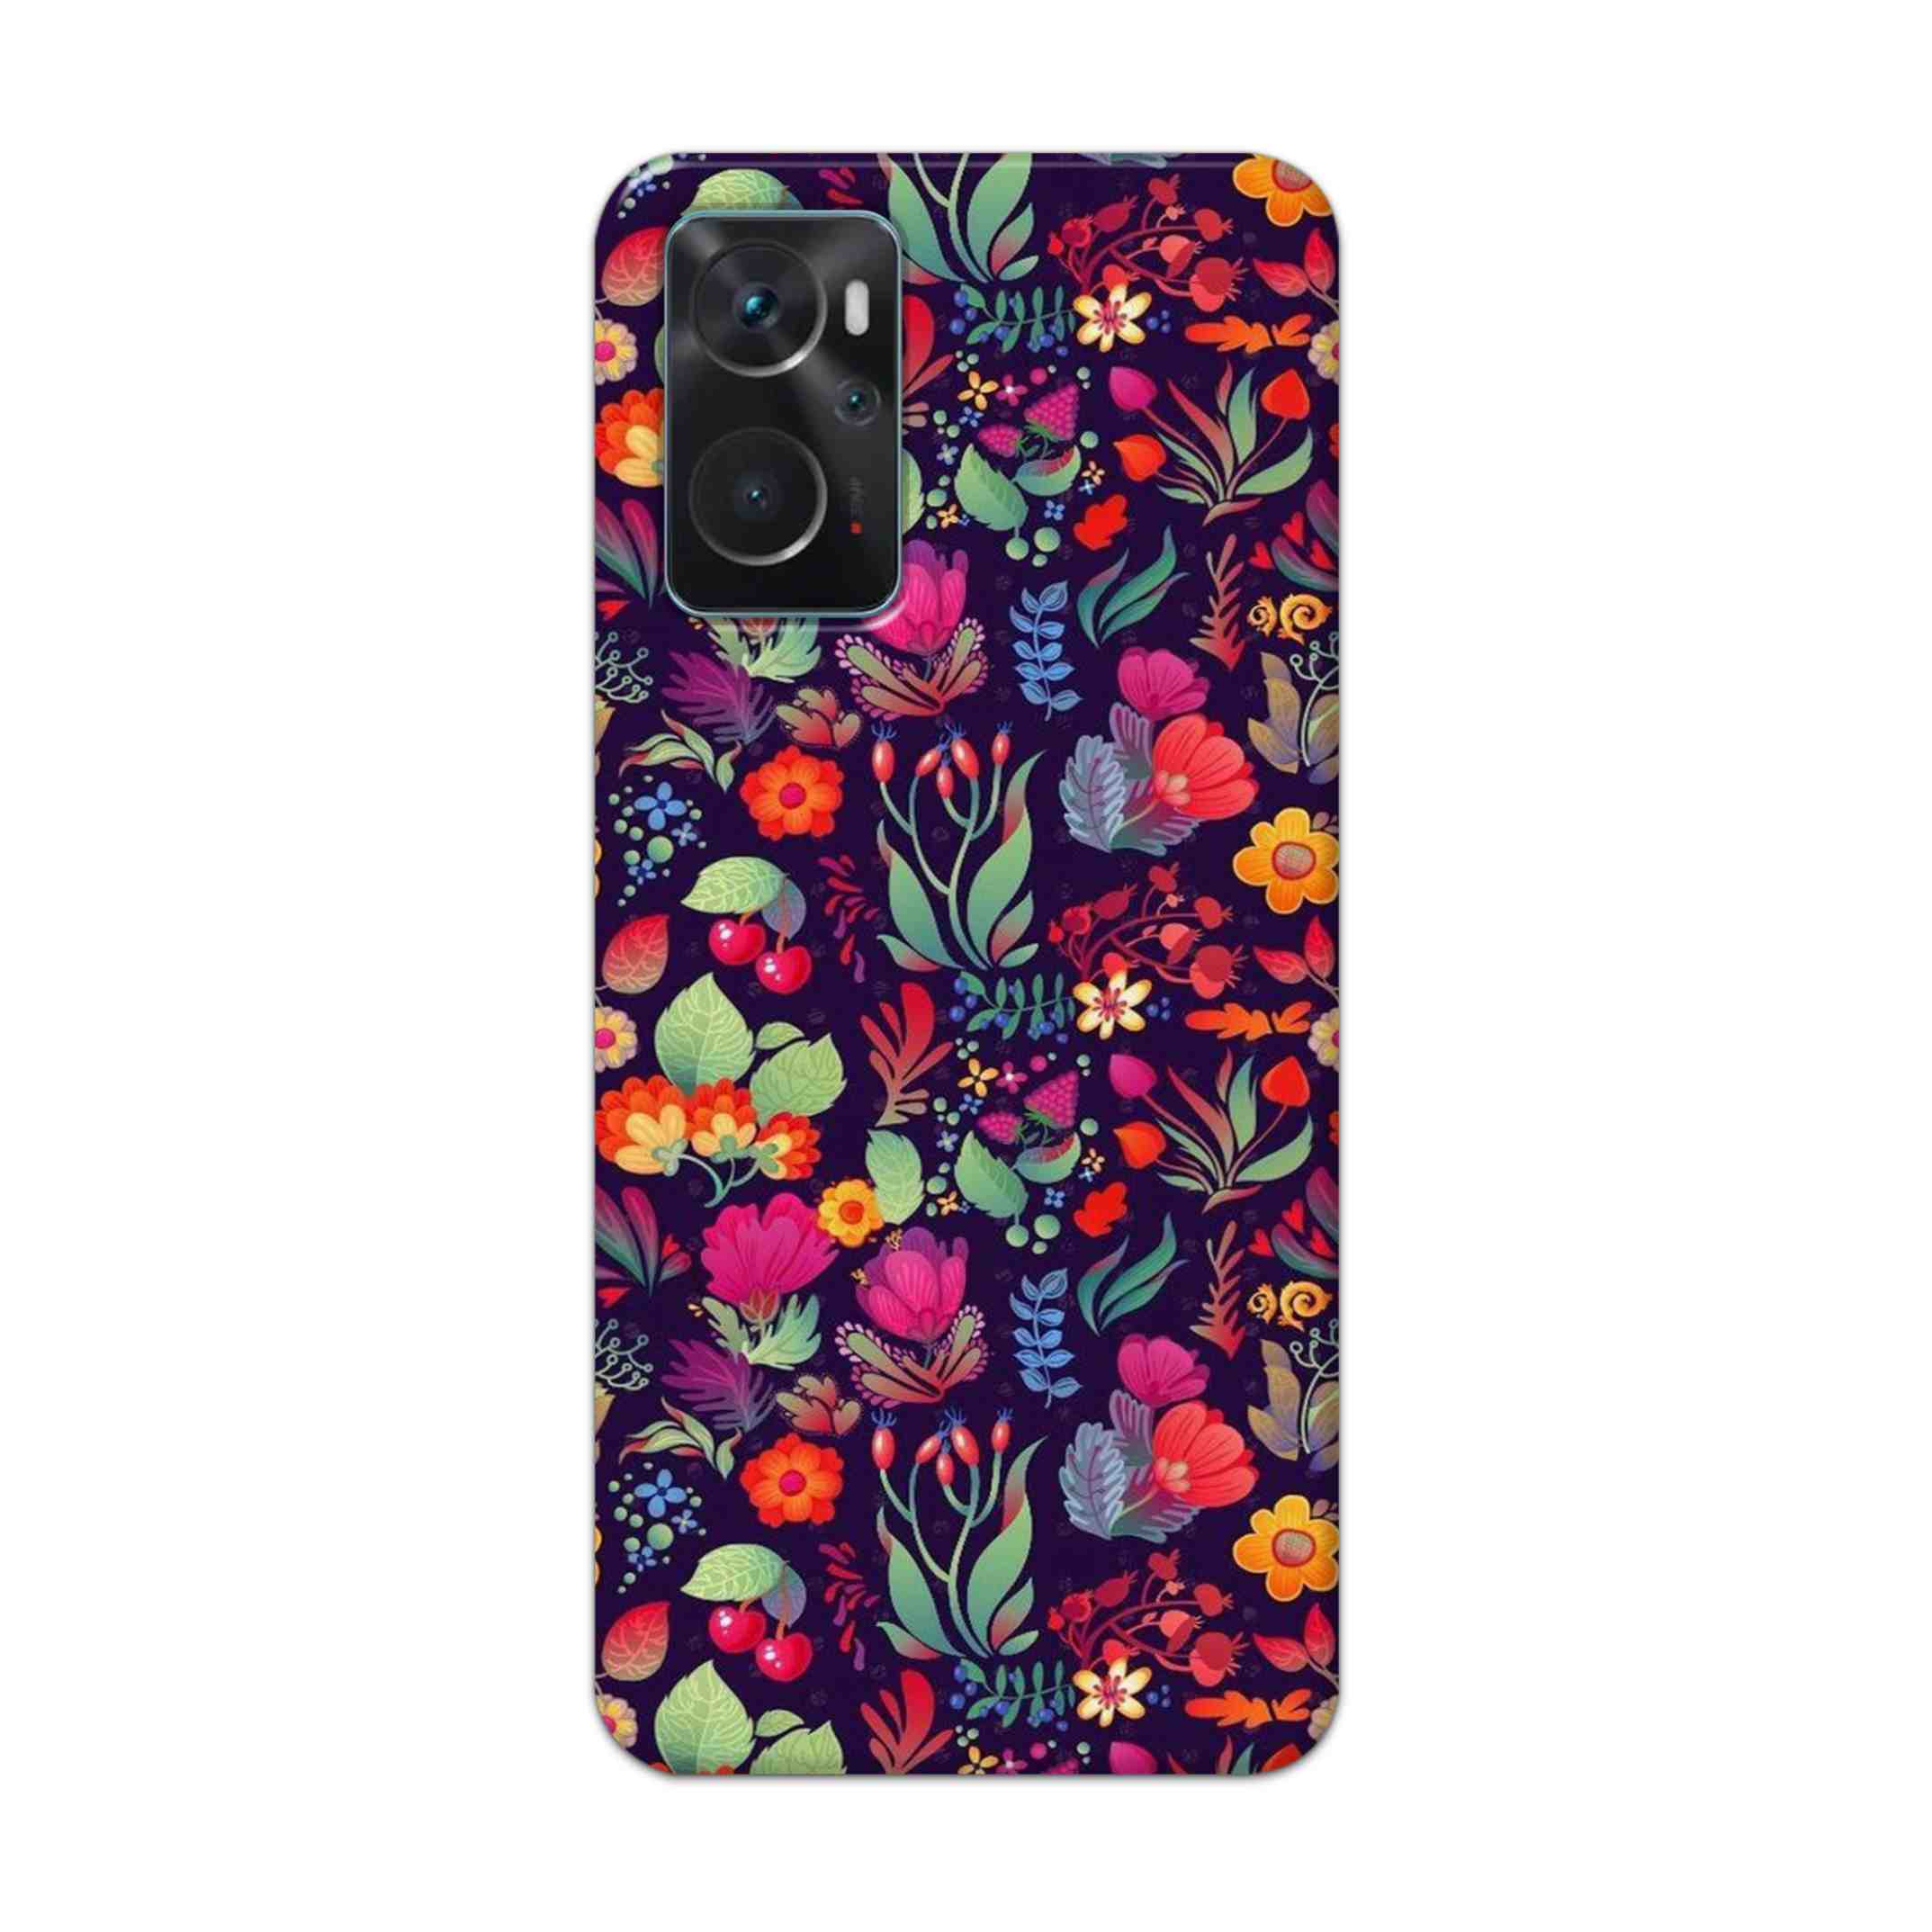 Buy Fruits Flower Hard Back Mobile Phone Case Cover For Oppo K10 Online